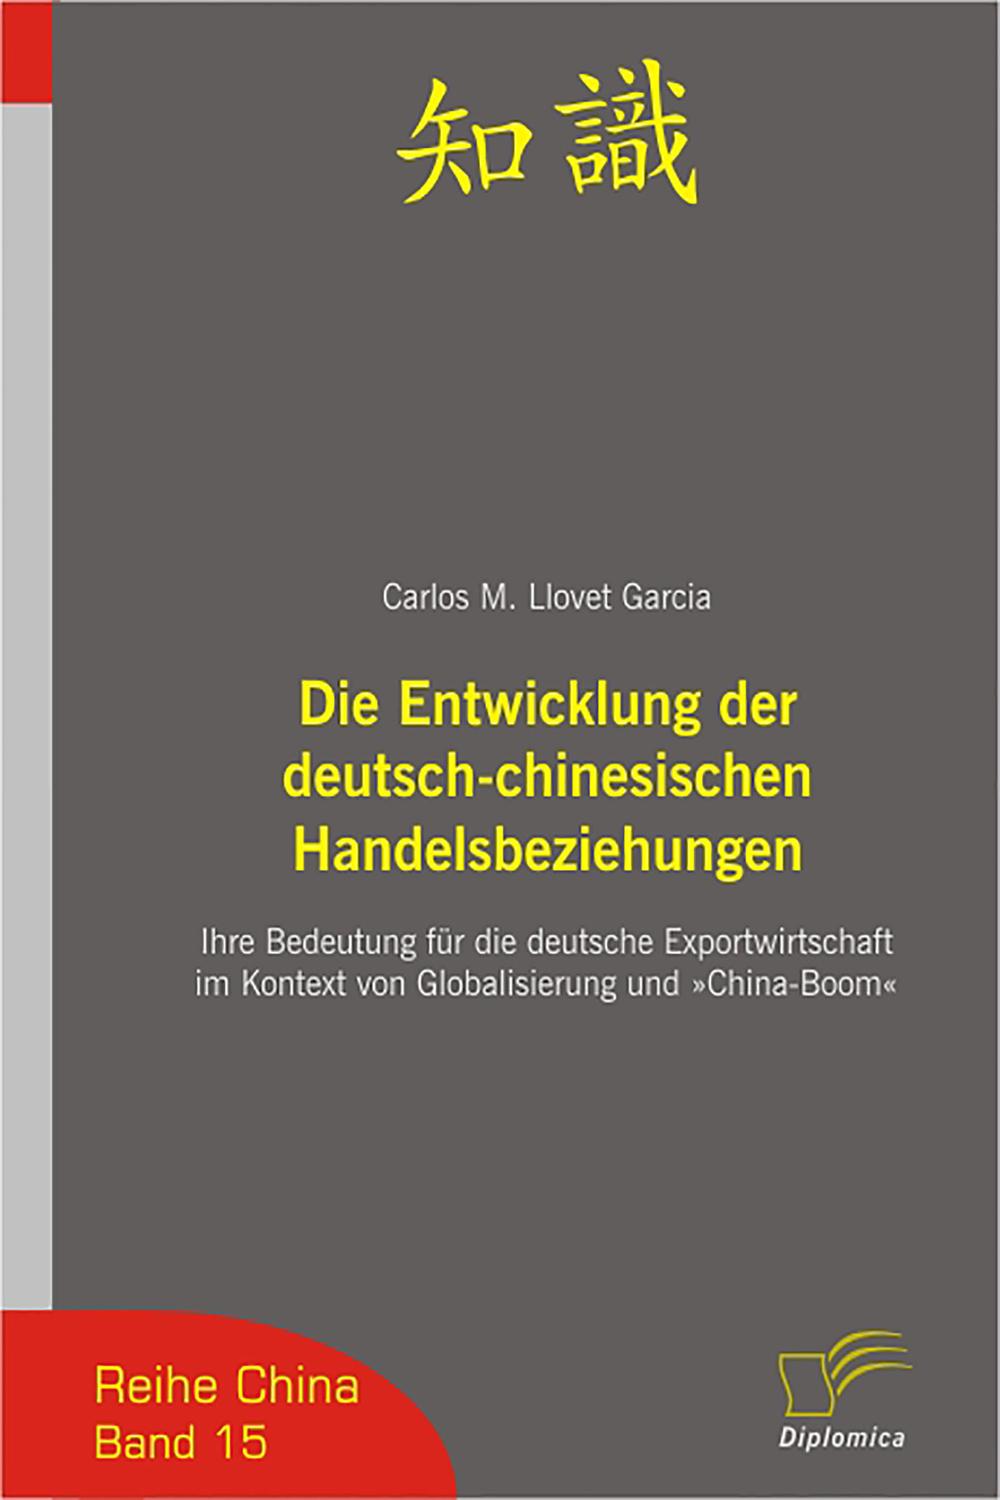 Die Entwicklung der deutsch-chinesischen Handelsbeziehungen - Carlos Miguel Llovet Garcia